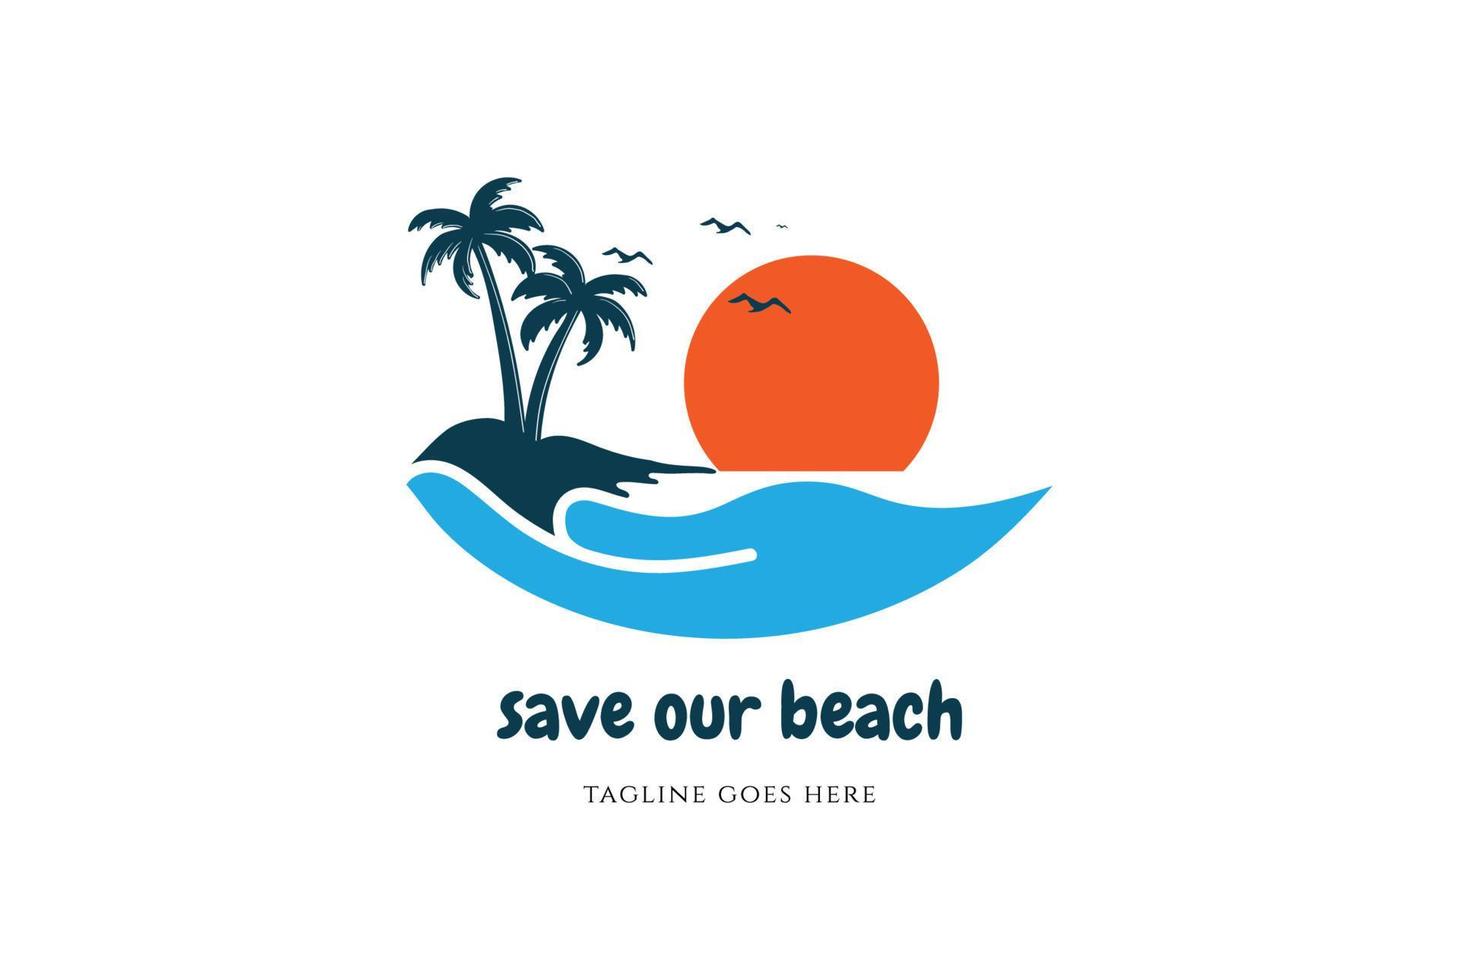 proteggere Salva mano tropicale spiaggia logo design vettore